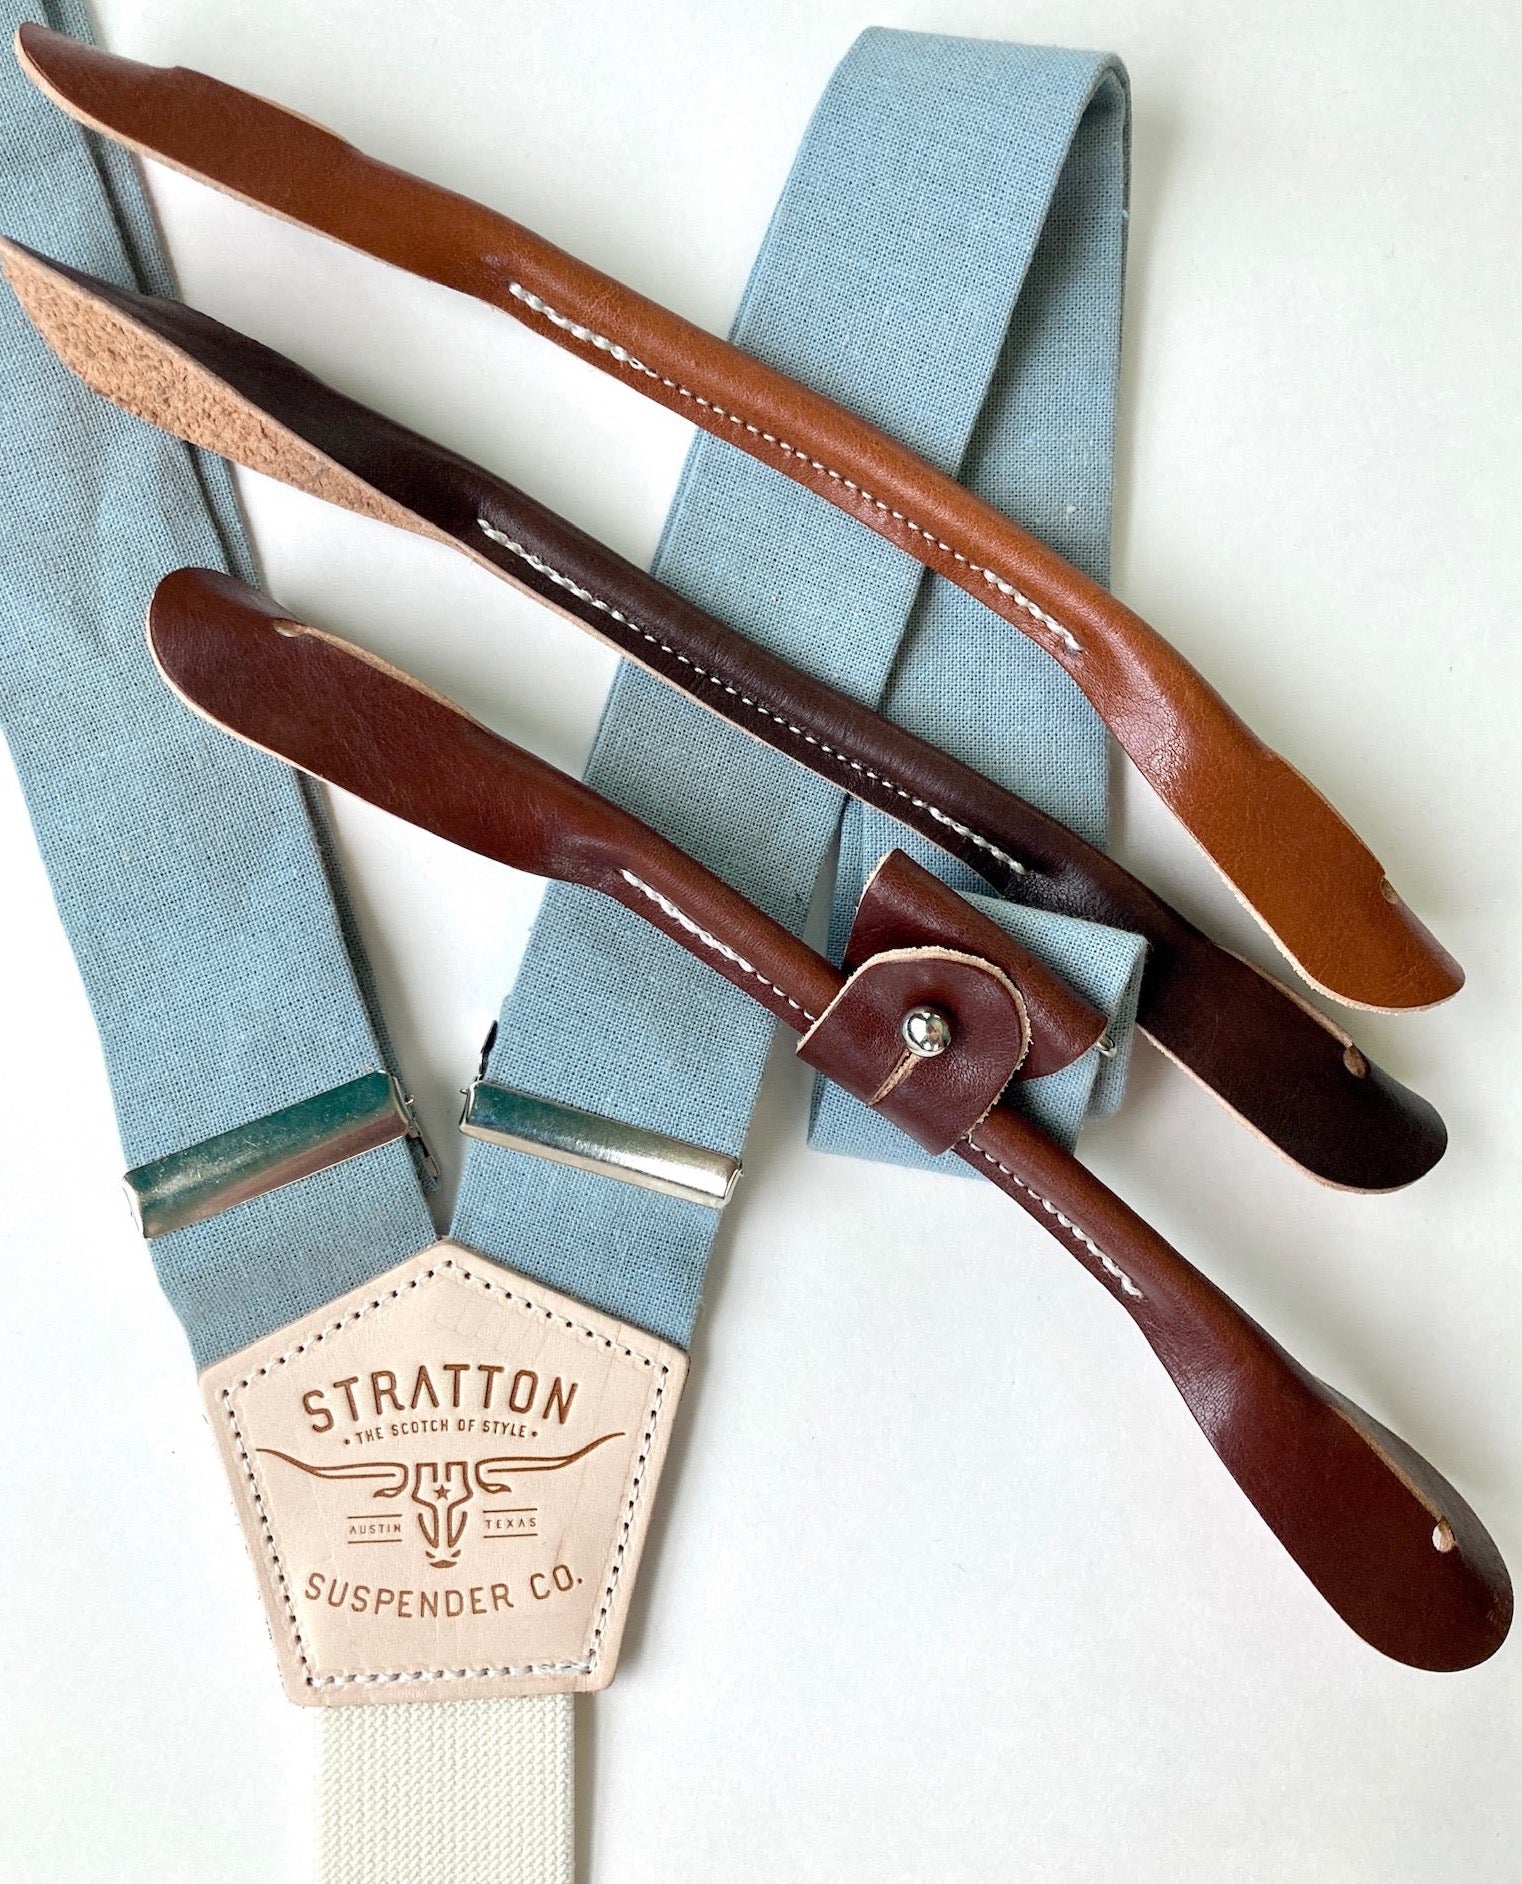 Summer Stratton Suspender Co. Collection